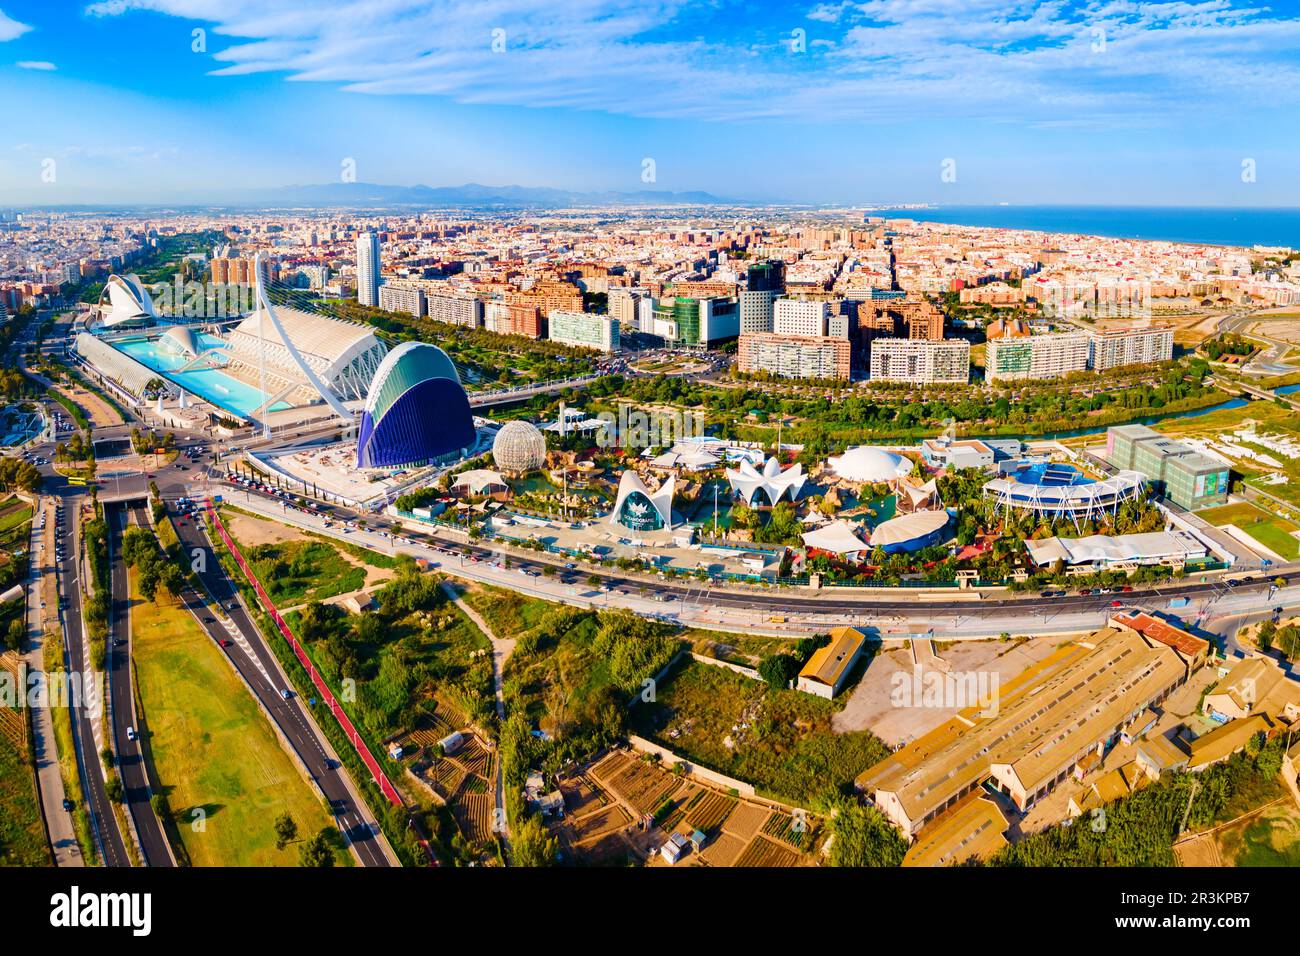 Valence, Espagne - 15 octobre 2021: La Cité des Arts et des Sciences ou Ciudad de las Artes y las Ciencias vue panoramique aérienne. C'est une culture et ar Banque D'Images